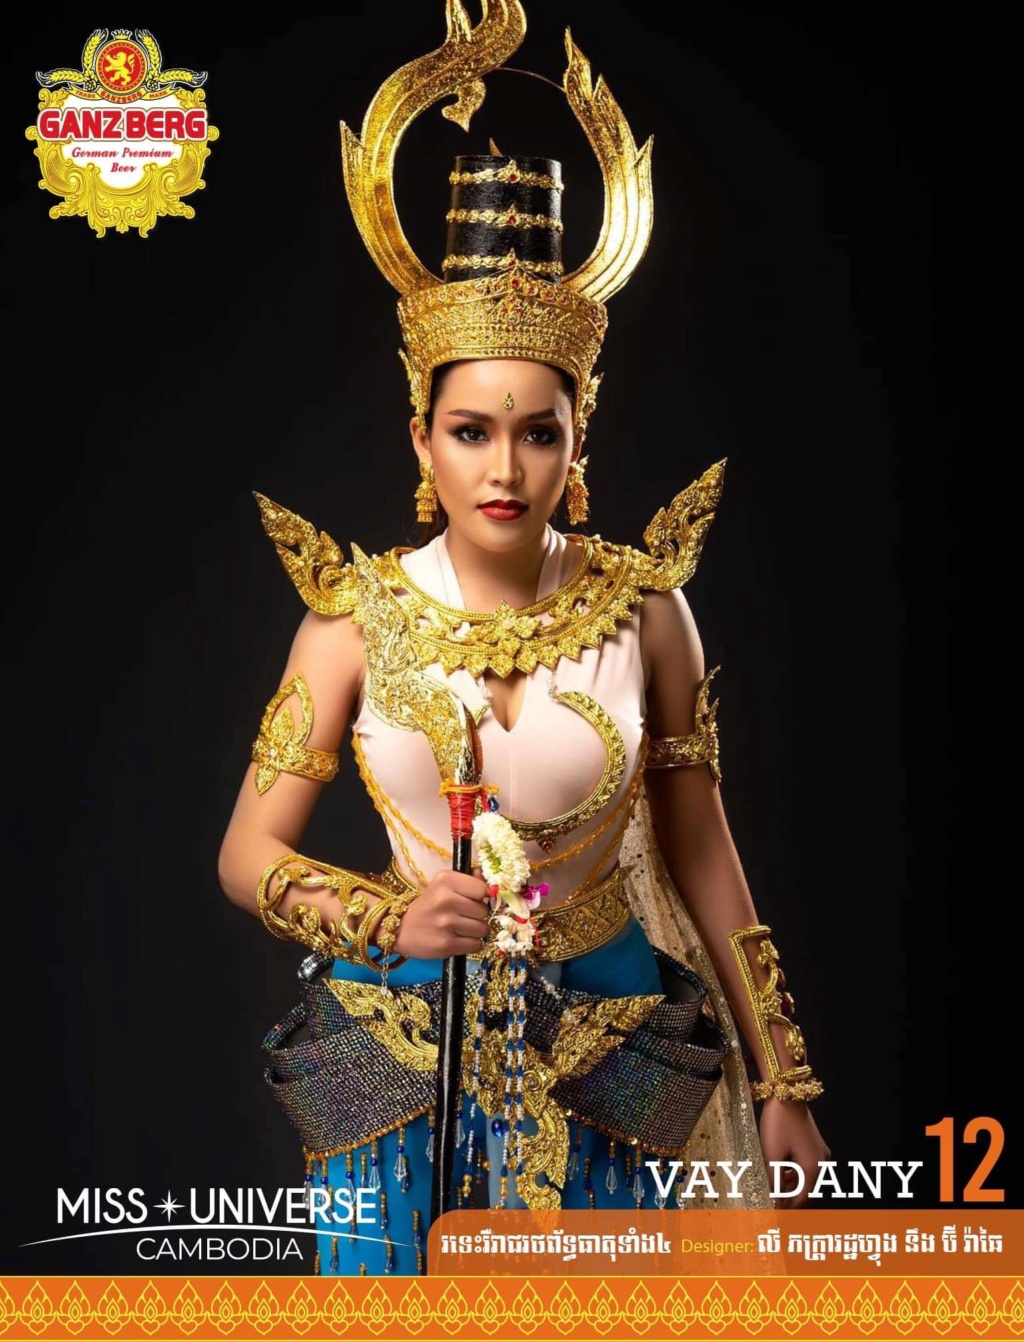 Miss Universe Cambodia 2021 is Ngin Marady 12109